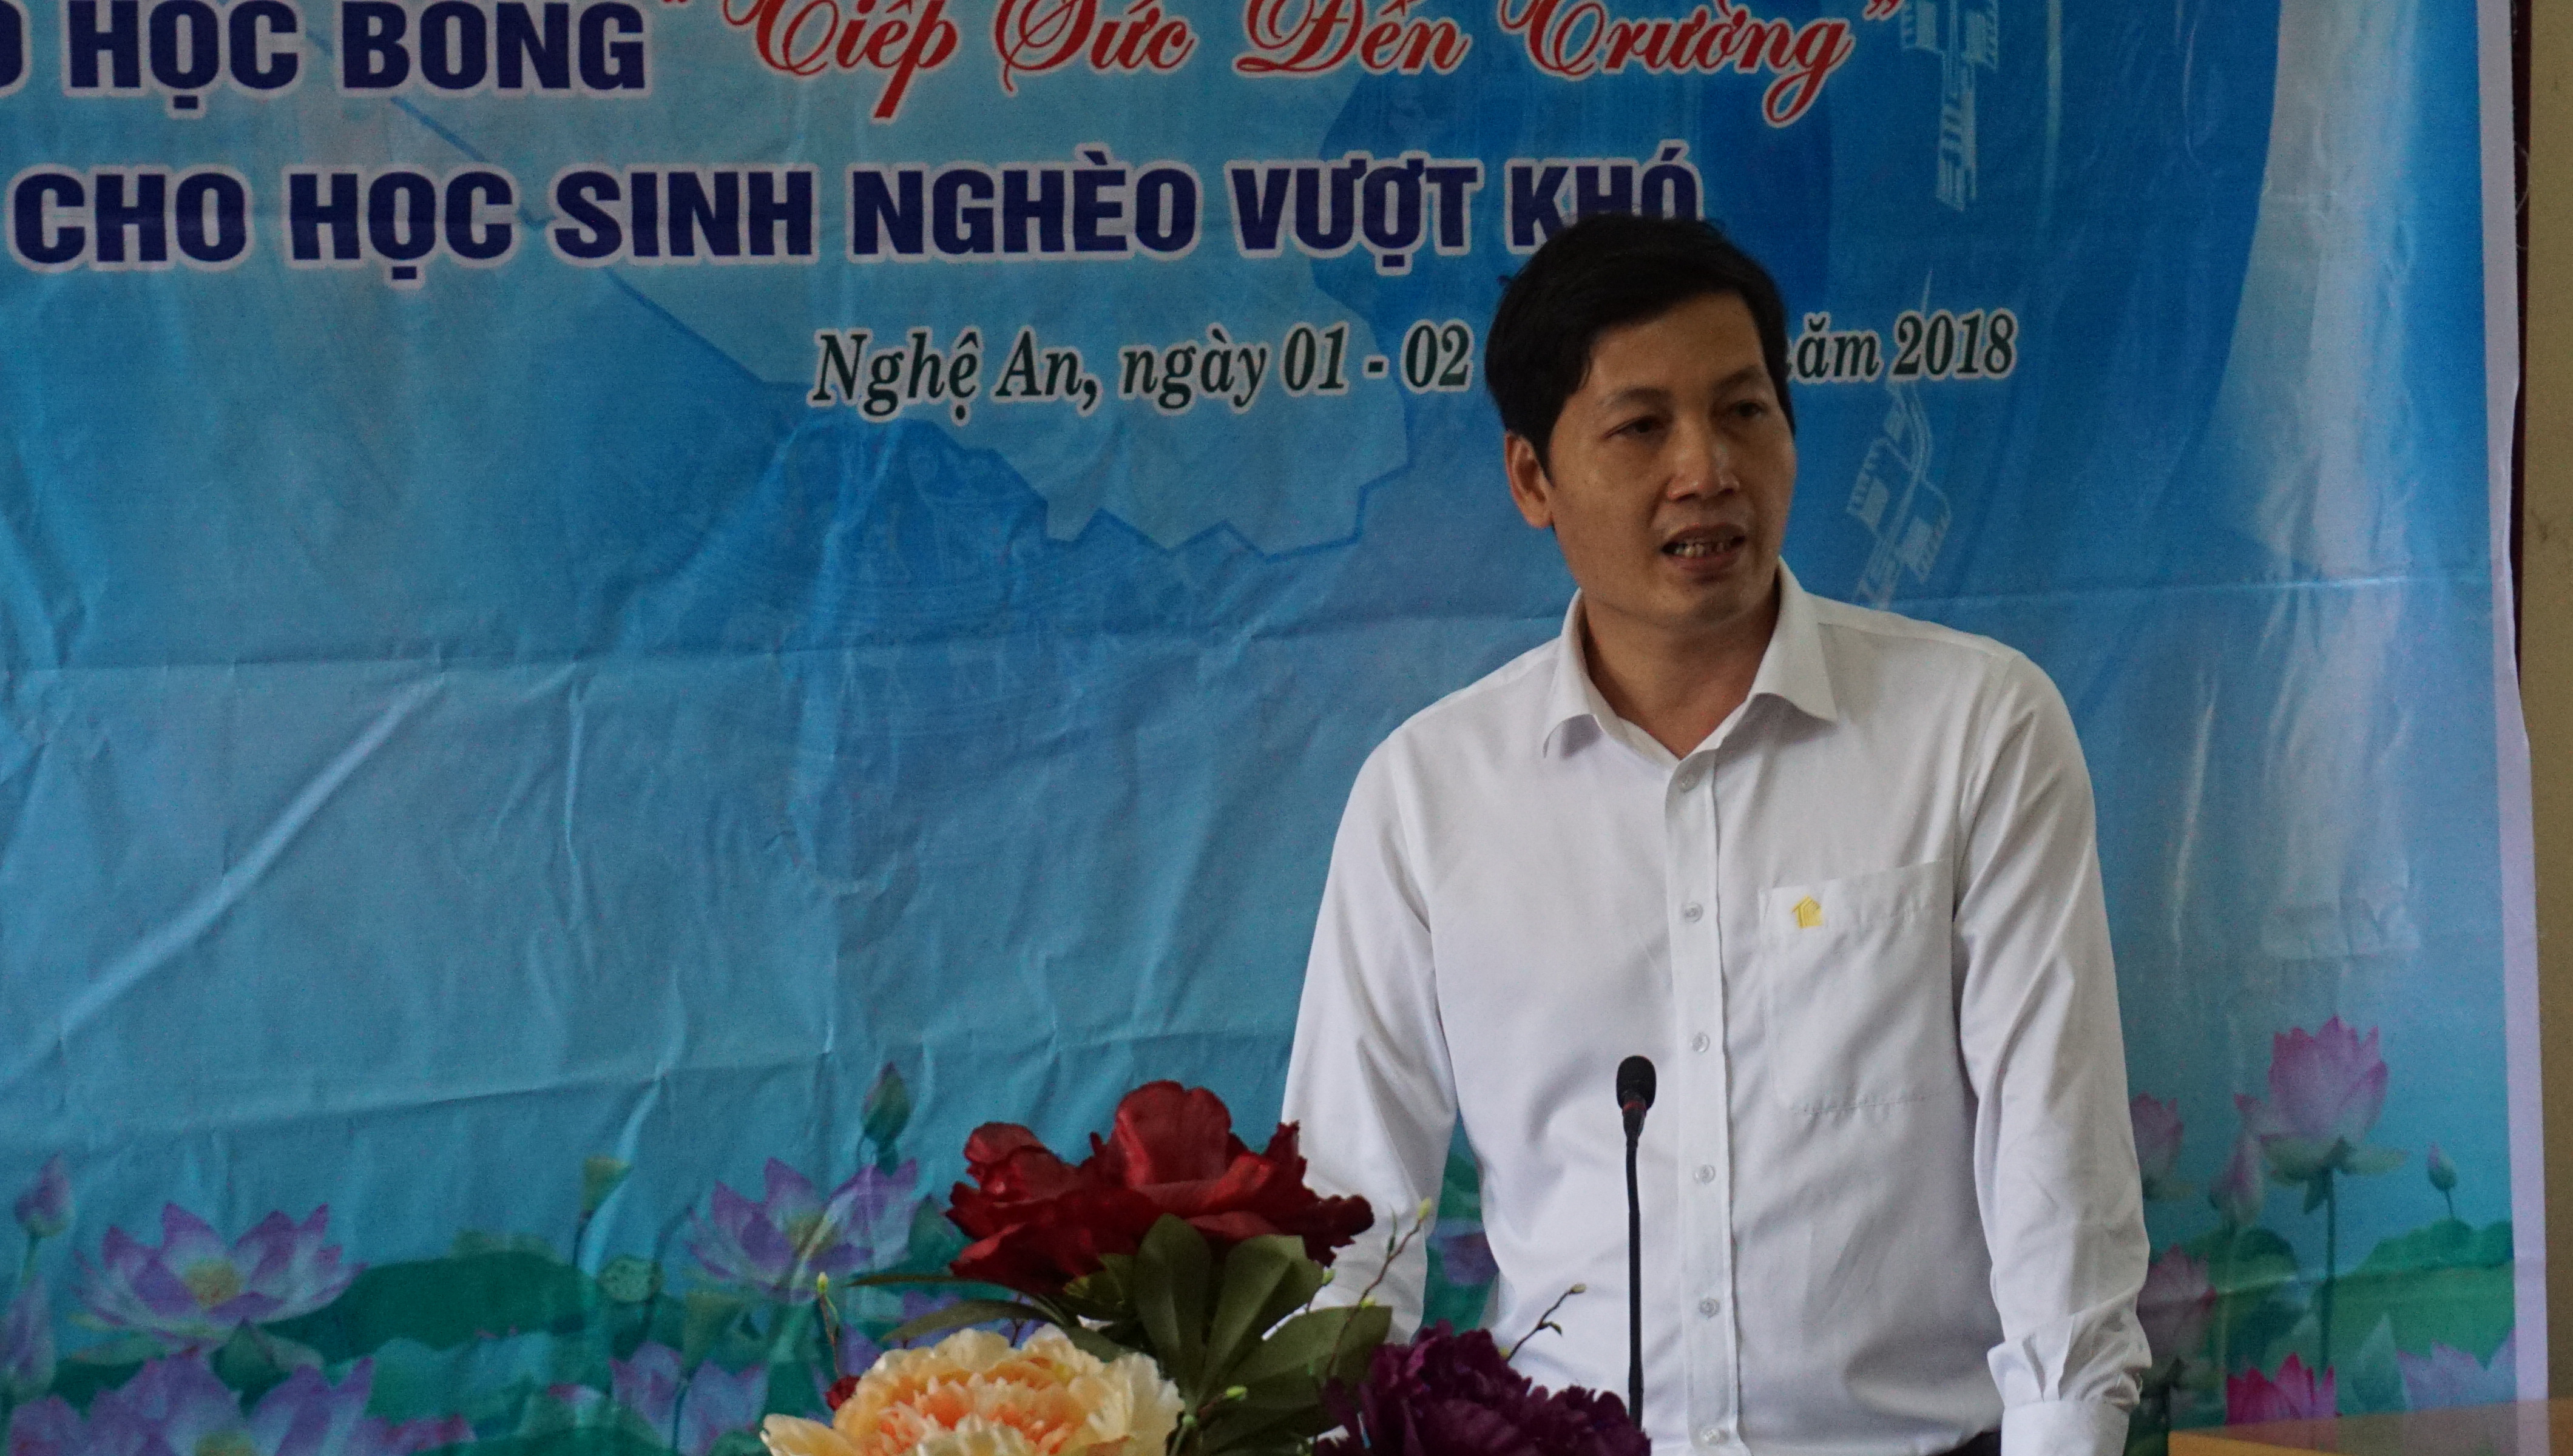 Ông Nguyễn Xuân Hào – Phó Giám đốc Chi nhánh TECCO Nghệ An phát biểu tại buổi lễ. Ảnh: Tùng Linh